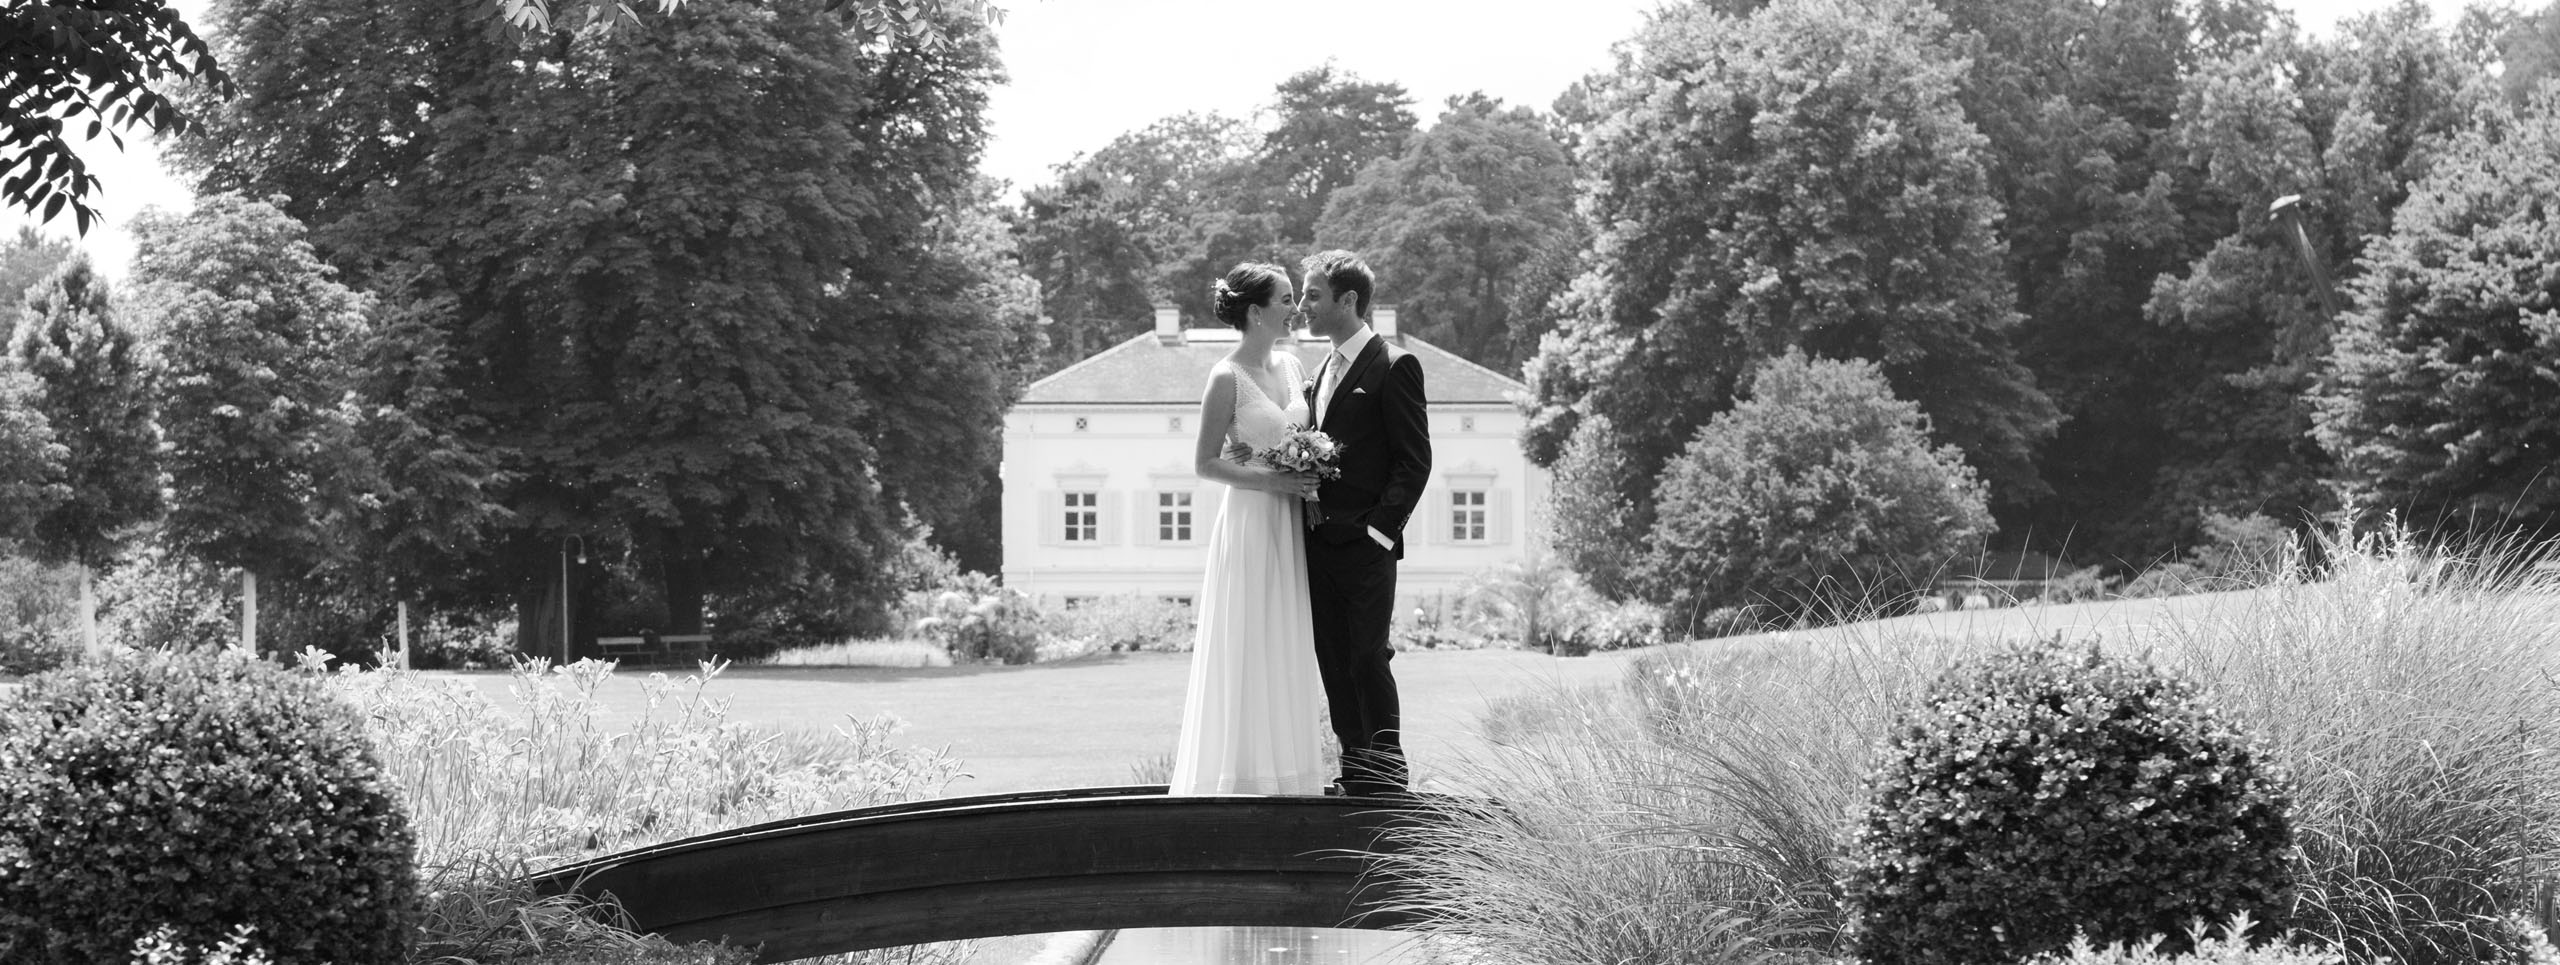 Hochzeitsfotograf Basel - Hochzeit in den schönen Merian Gärten - Das Brautpaar auf der kleinen Brücke